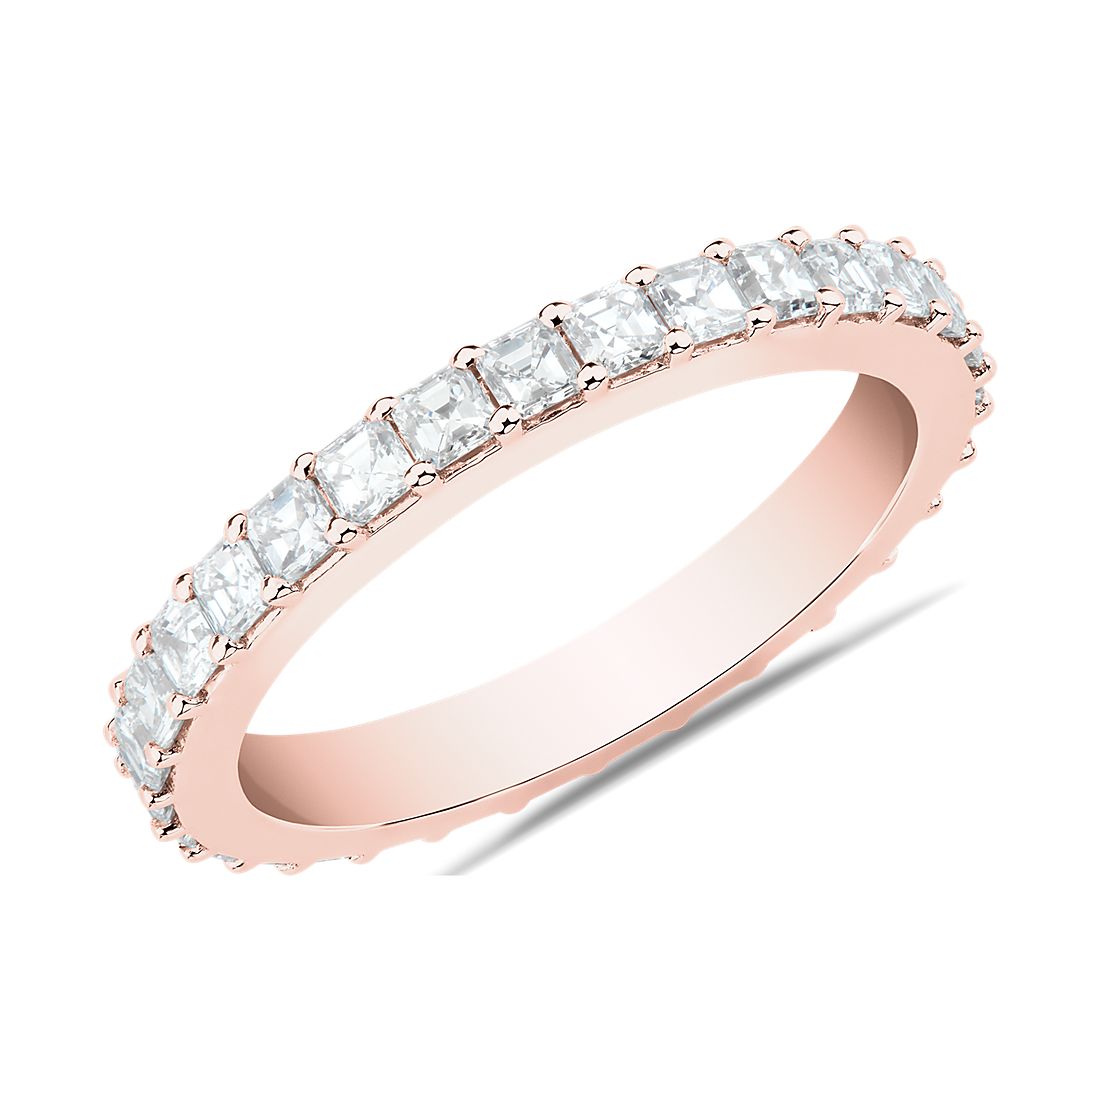 Bella Vaughan Asscher Diamond Wedding Ring in 18k Rose Gold (1.13 ct. tw.)